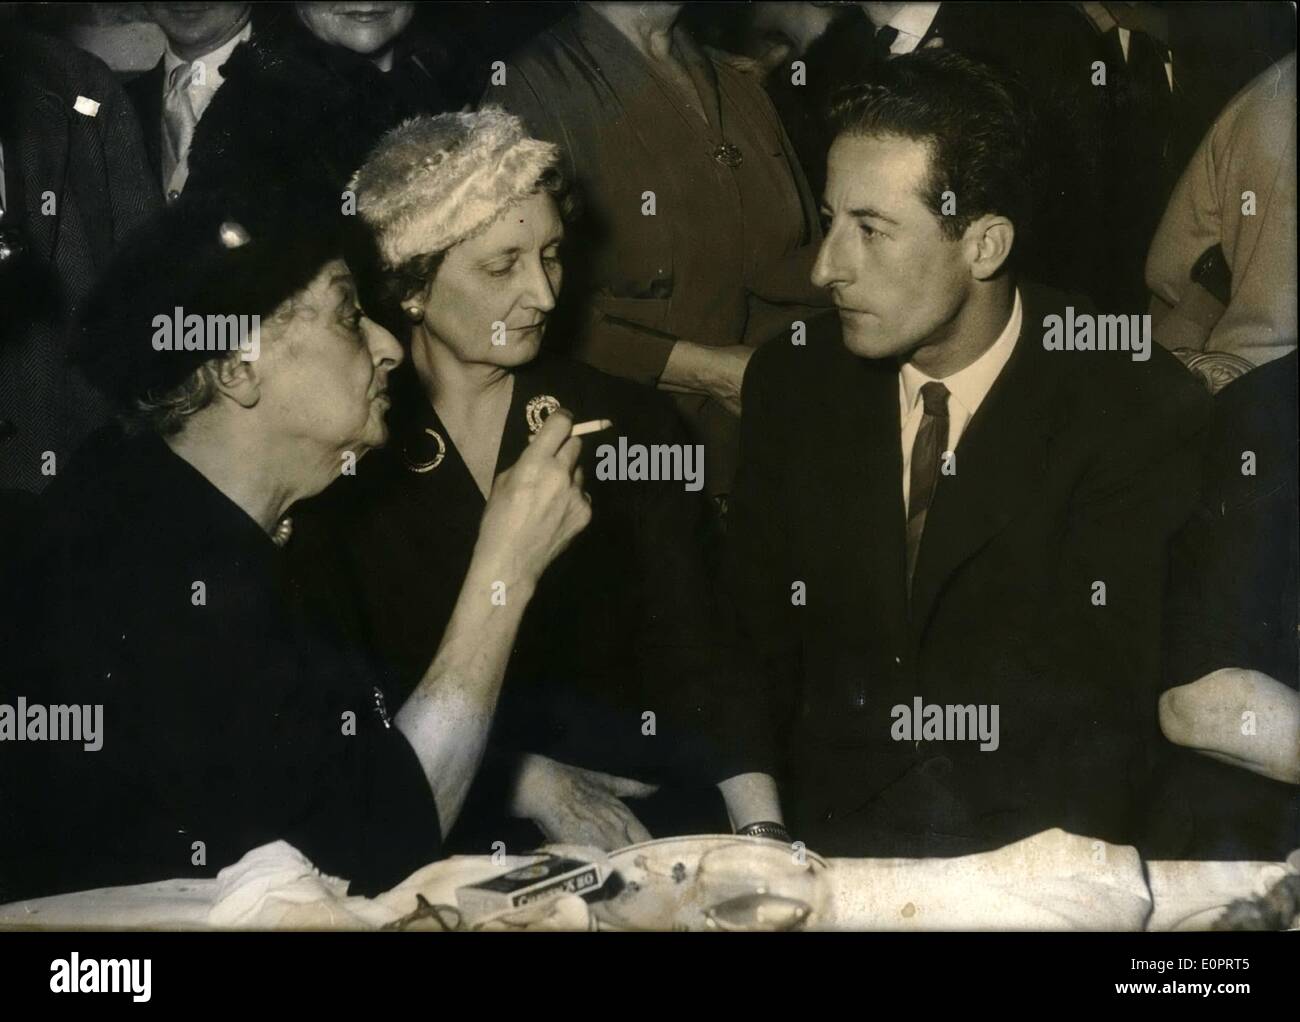 Nov. 11, 1956 - Il vincitore del premio Femina: Il premio Femina (uno dei più apprezzati riconoscimenti letterari) è andato a Jean-Regis Bastide per il suo libro " Les Adieux''. La foto mostra l'autore fotografato con MME Gregh (sinistra), membro della giuria e Madame de Beaumont, presidente della giuria. Foto Stock